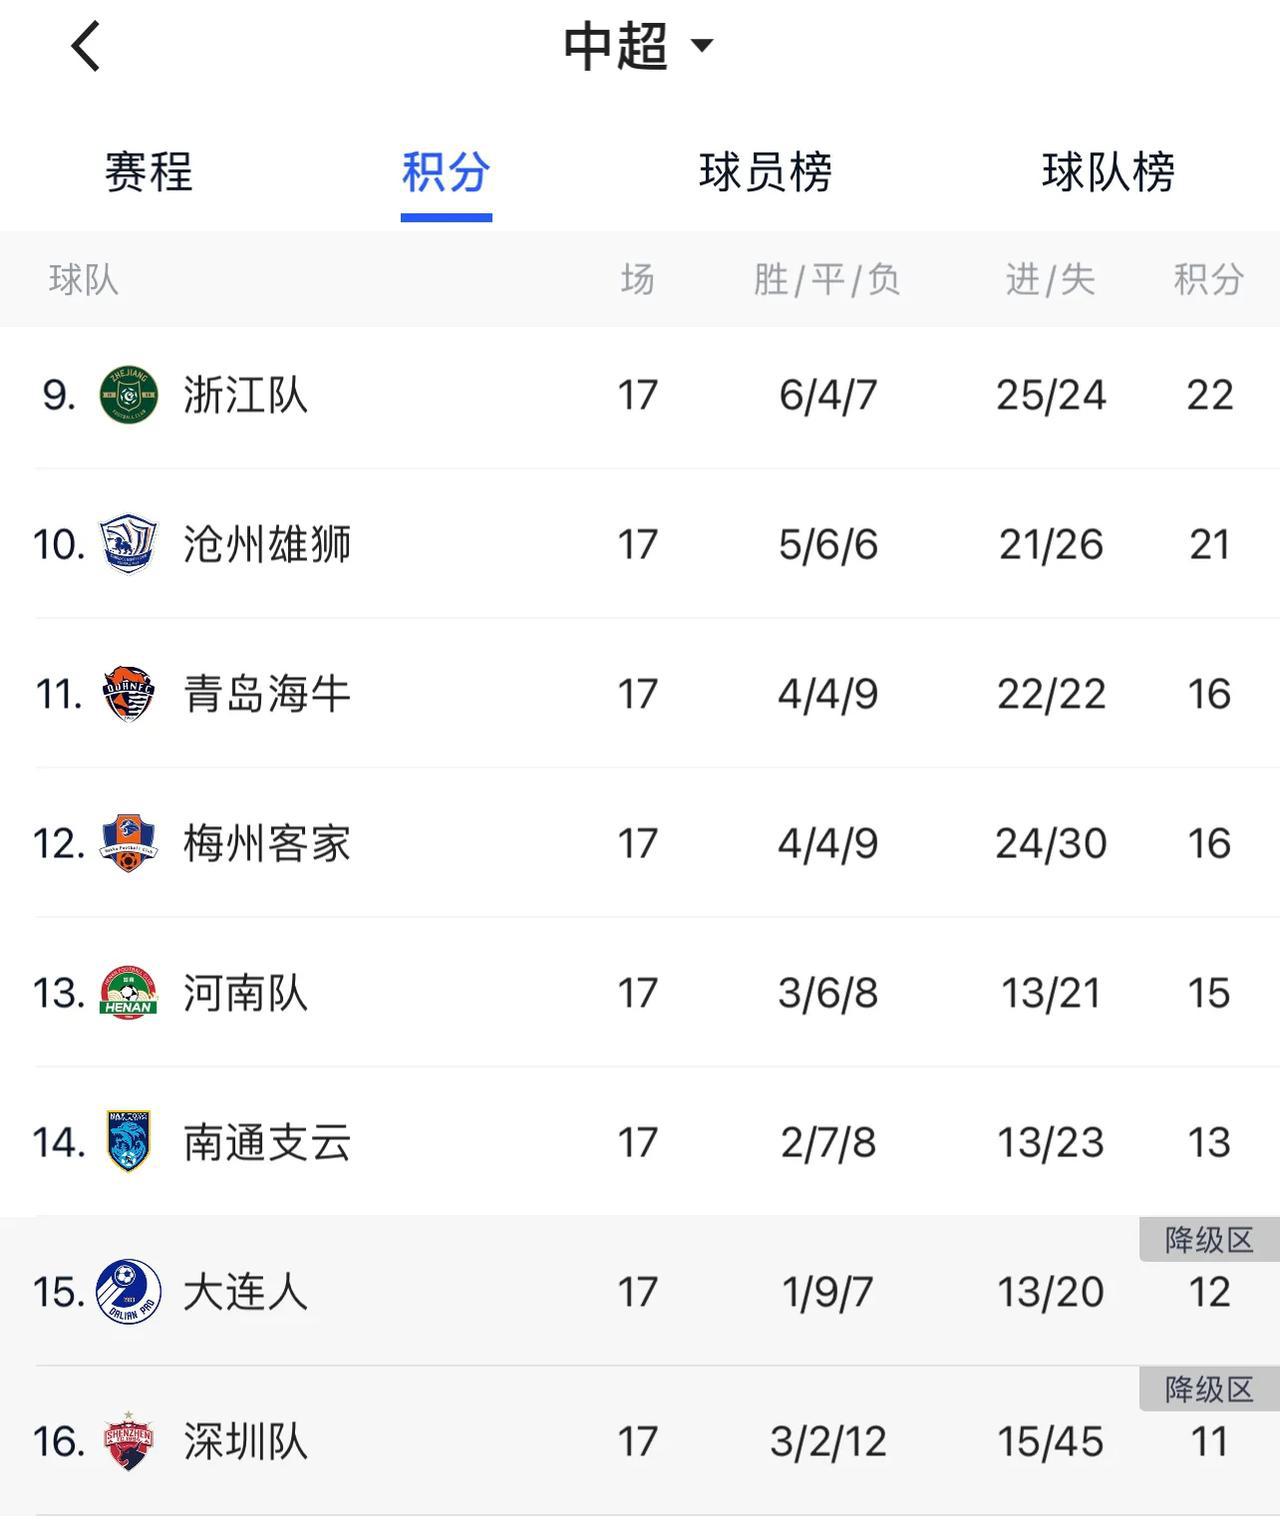 中超联赛第17轮结束，最新积分榜。
1、上海海港轻松获胜，稳居榜首。
2、上海申(3)